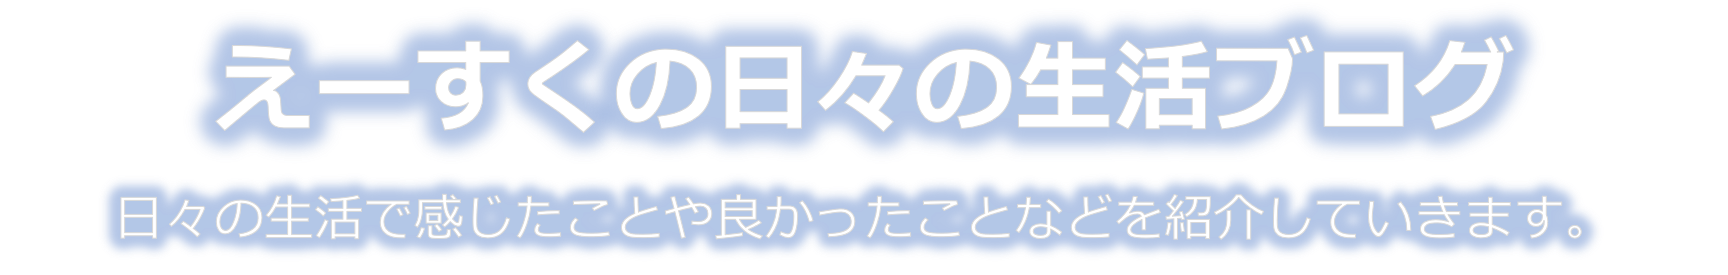 ポケモンgo スーパーリーグ最強 マリルリのおすすめ技と対策ポケモンを紹介 えーすくの日々の生活ブログ